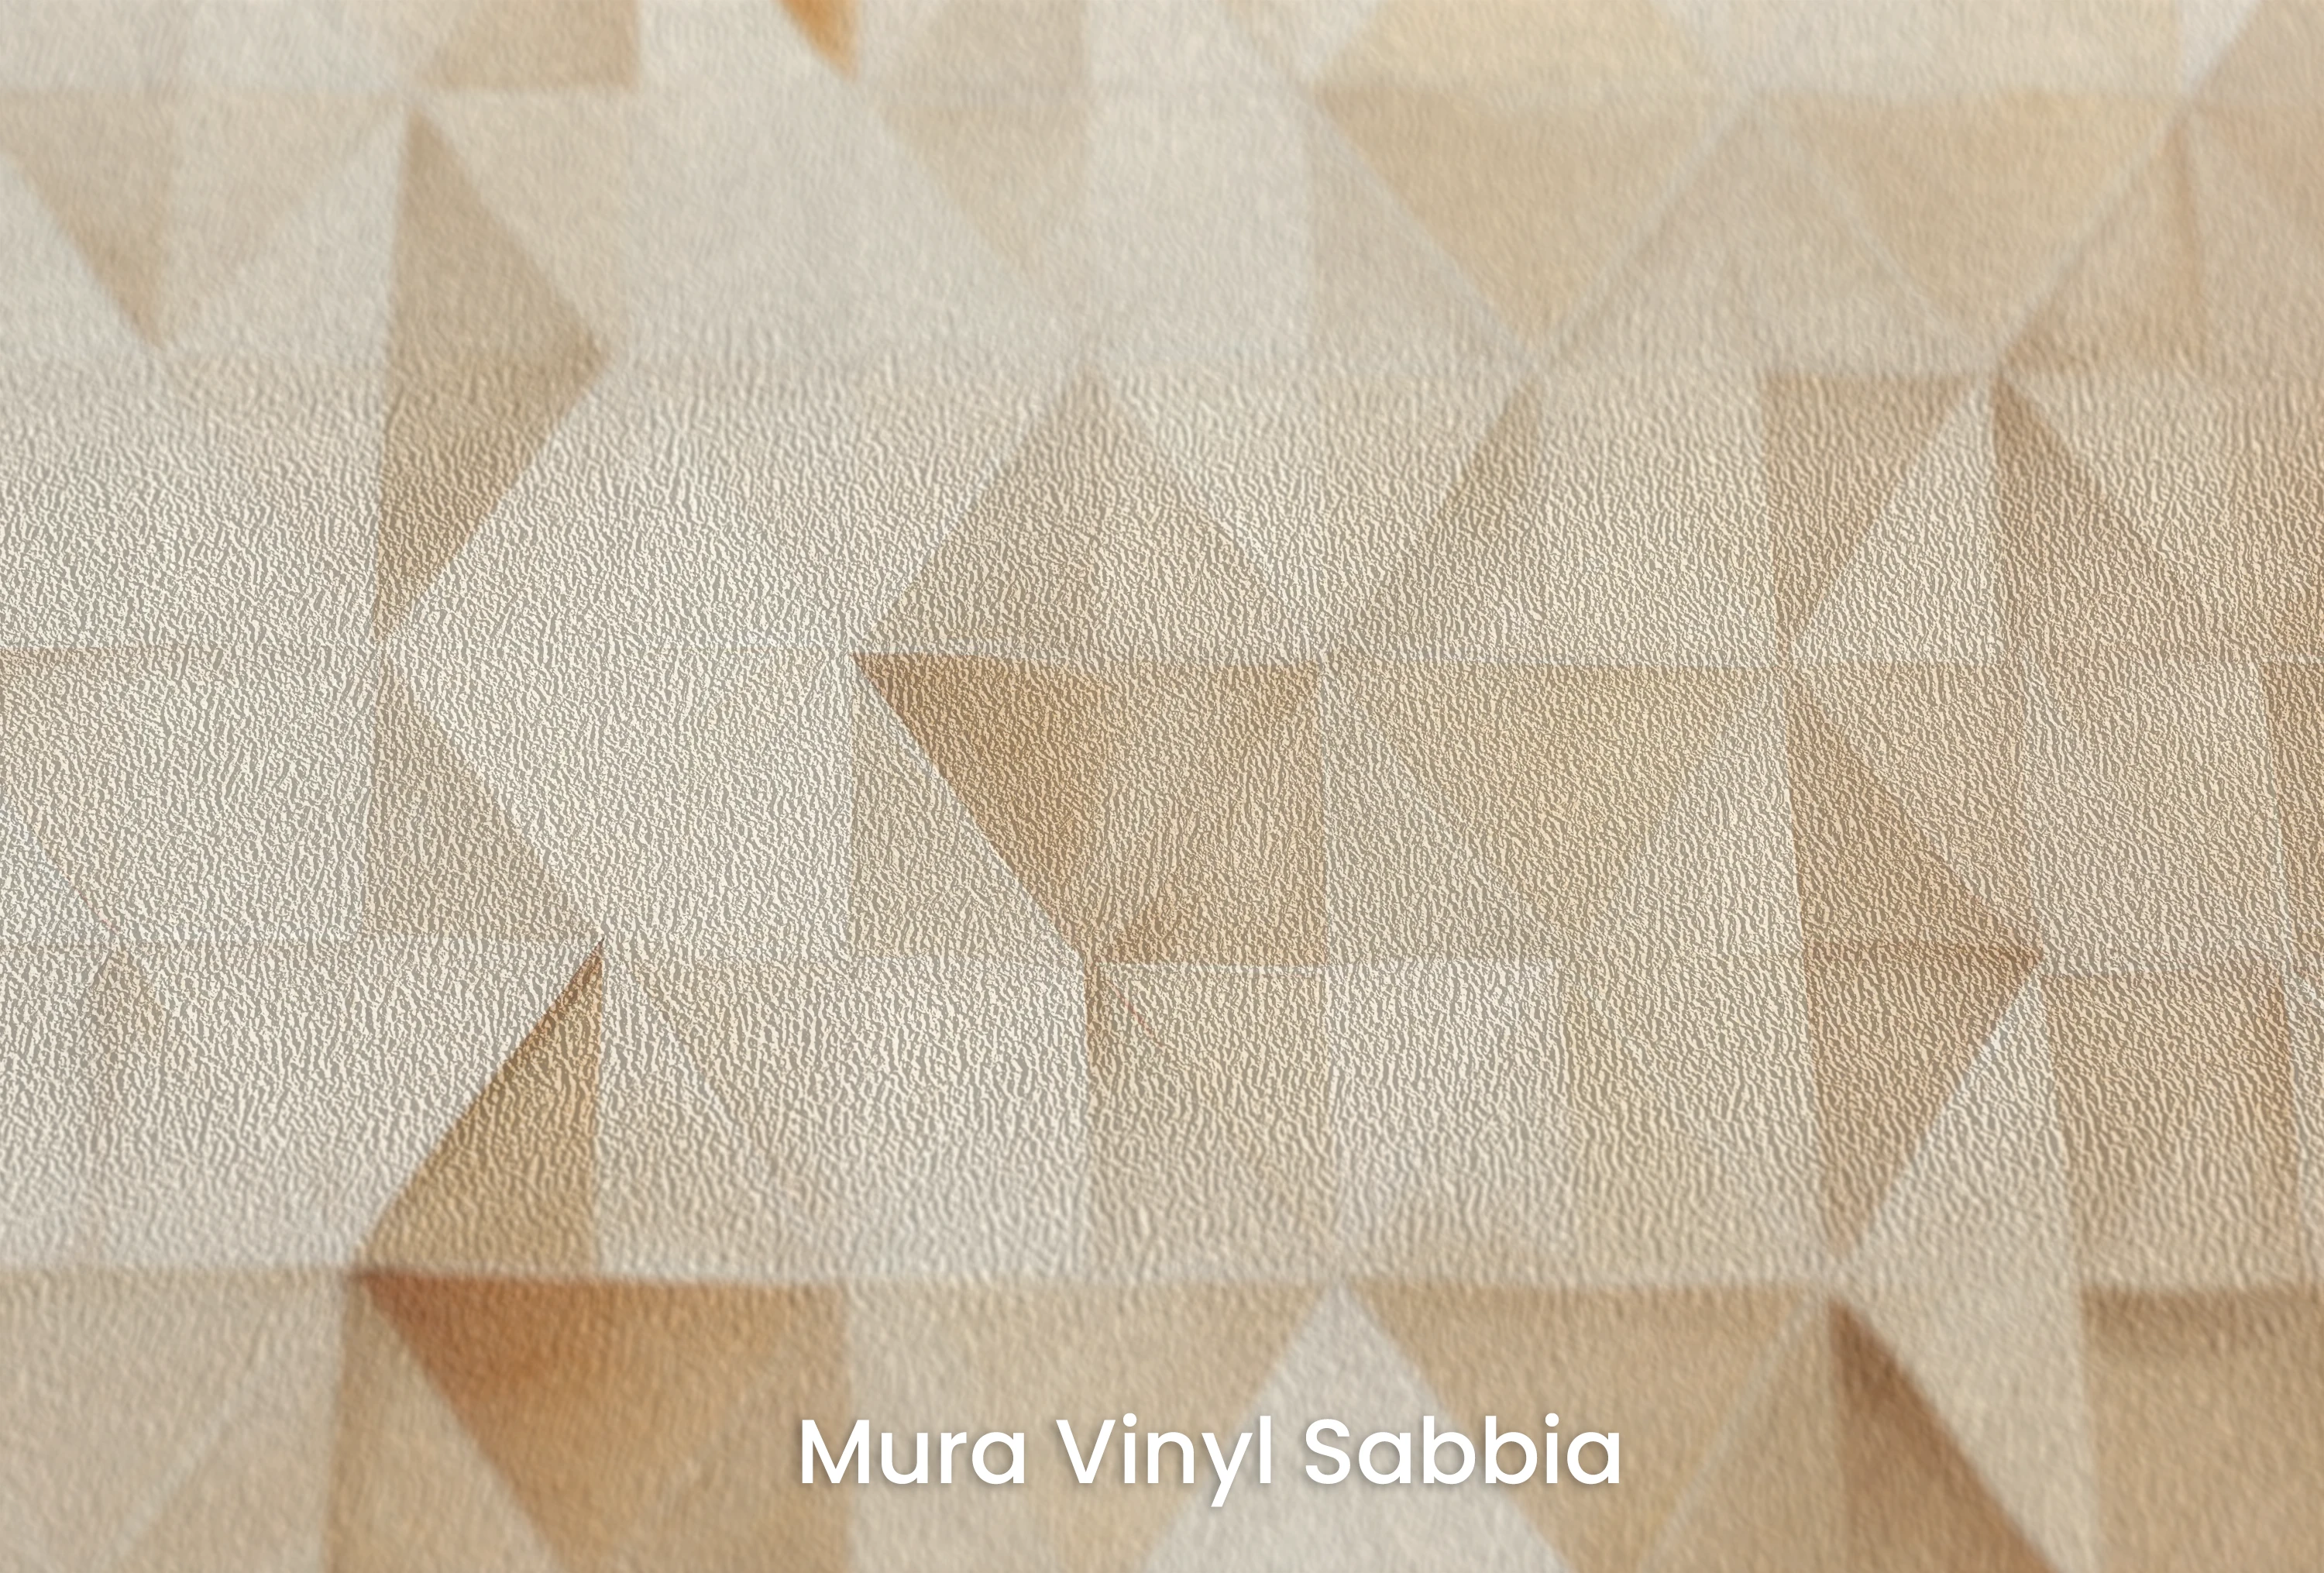 Mura Vinyl Sabbia - vinyl wallpaper on non-woven fabric with a coarse sand grain structure